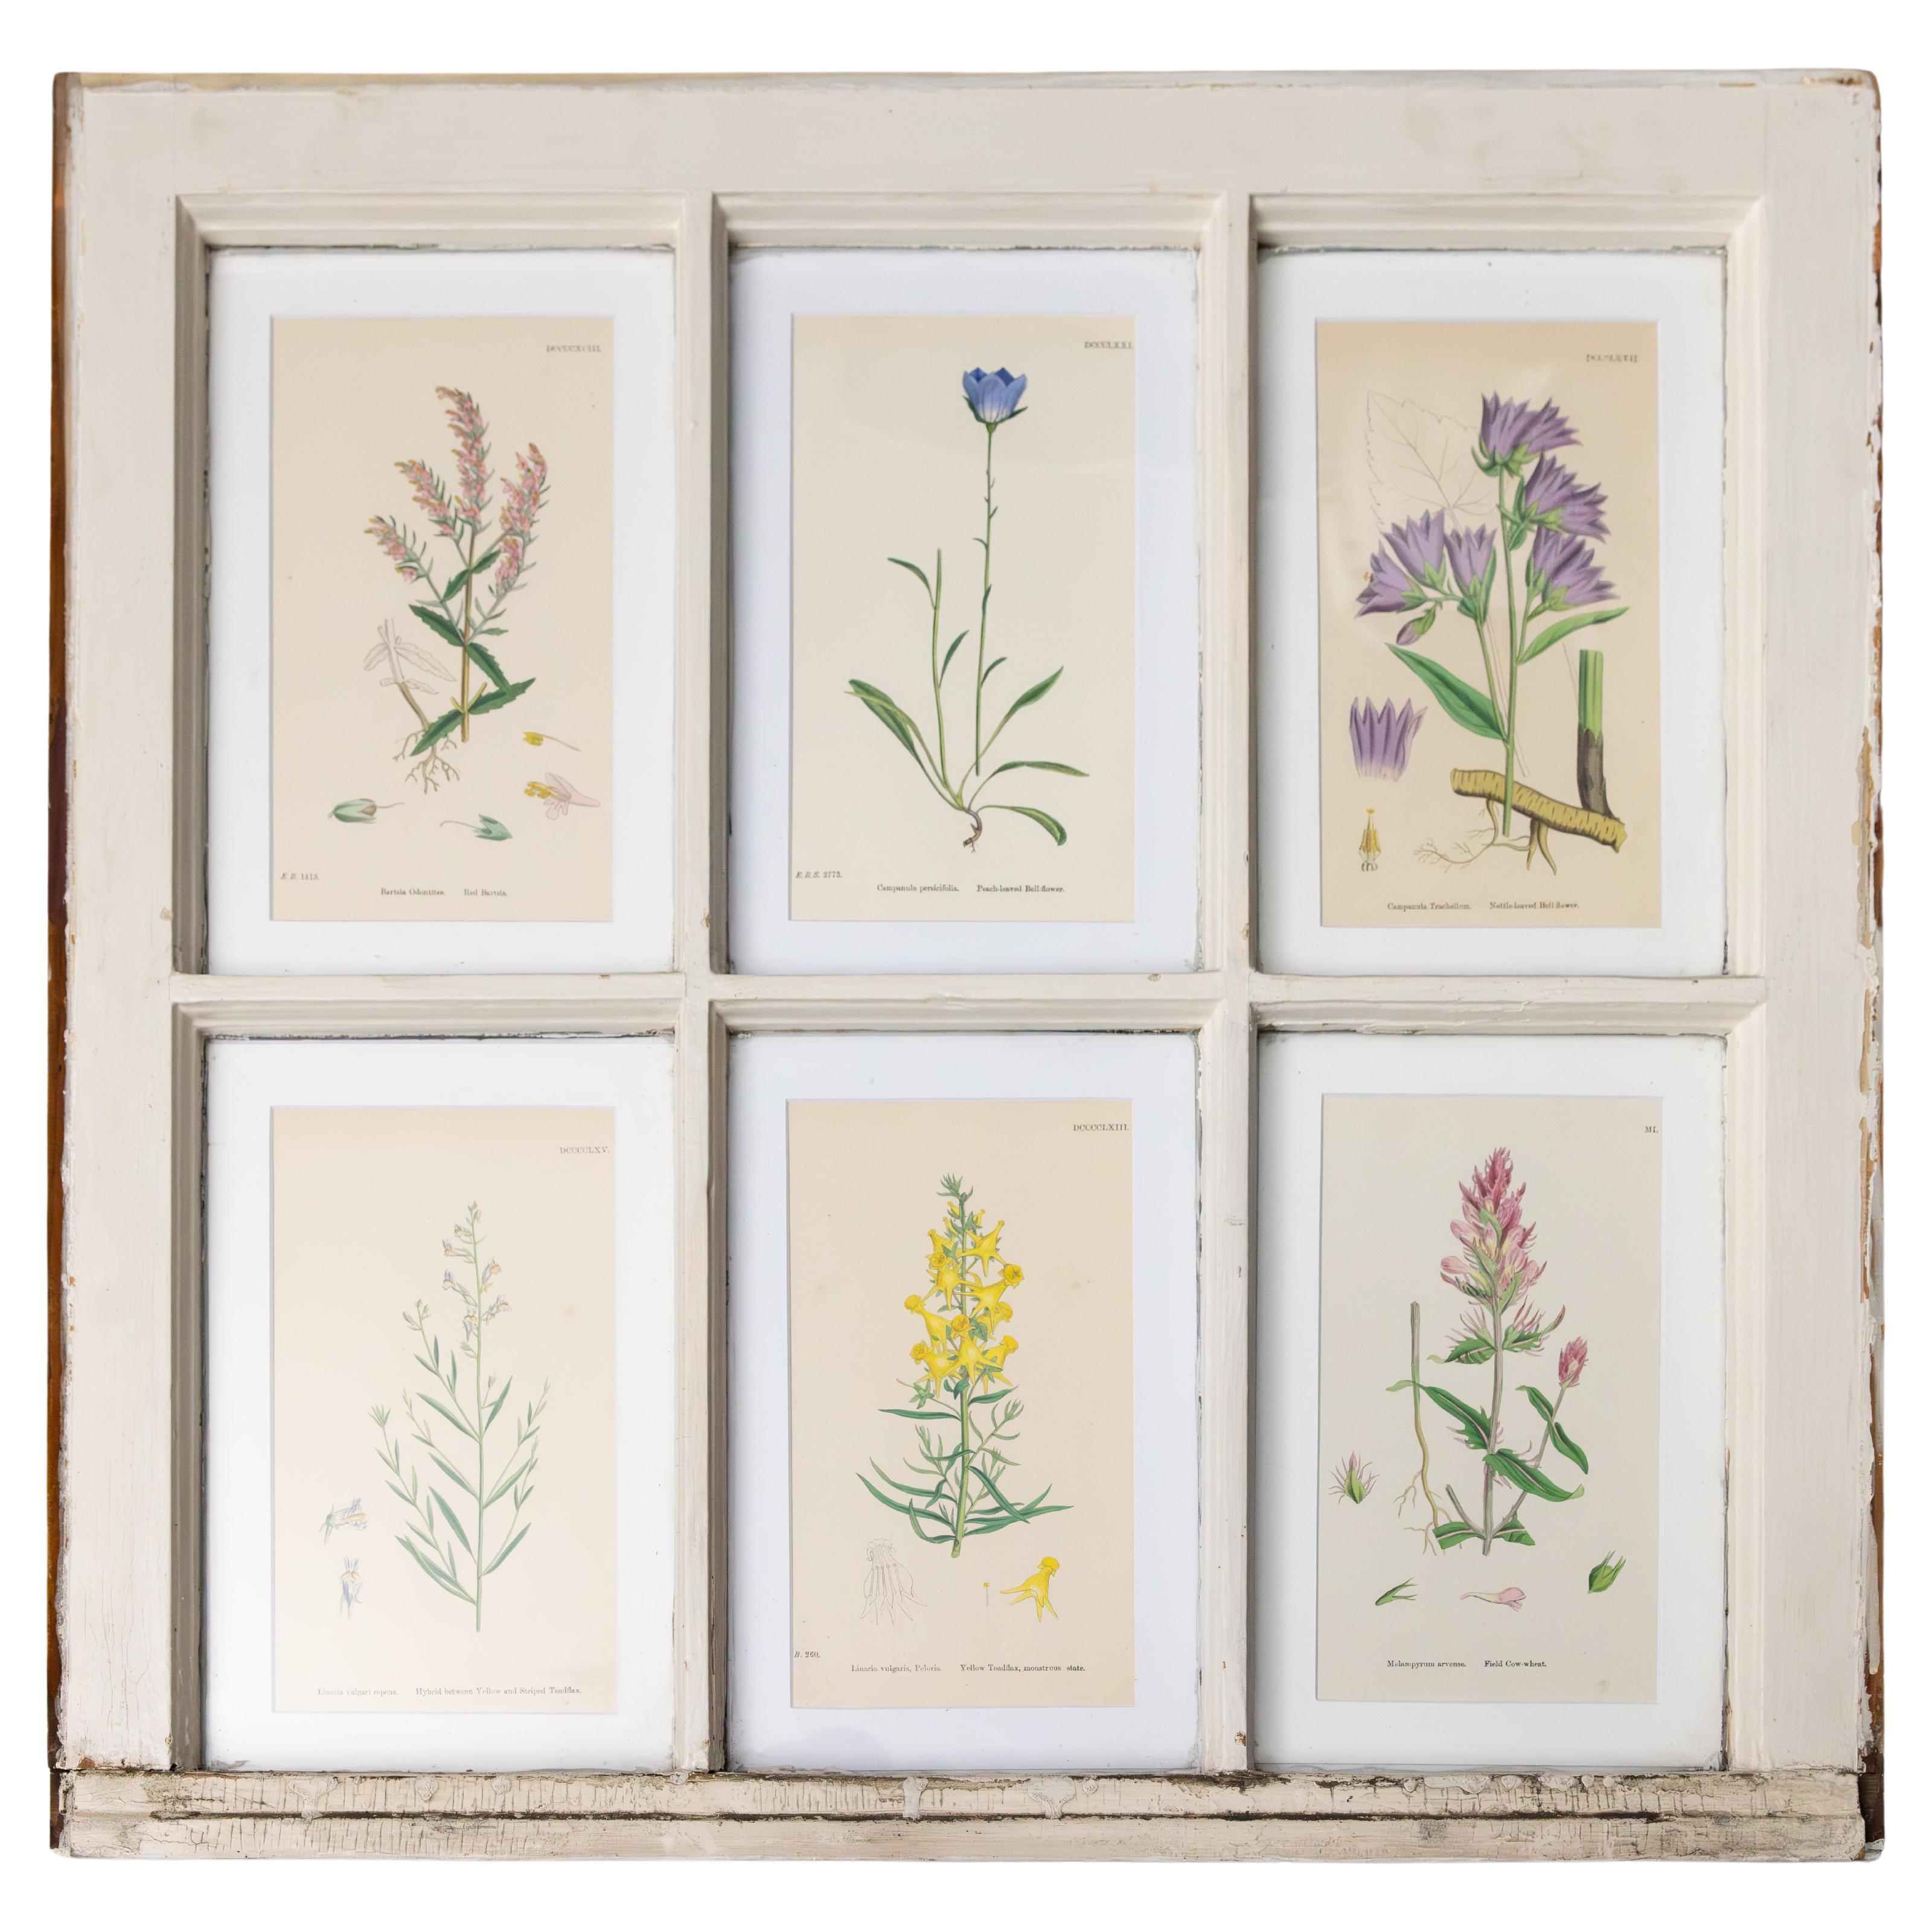 Antike Arts and Crafts-Fensterschärchen mit botanischen Pflanzen aus dem 19. Jahrhundert